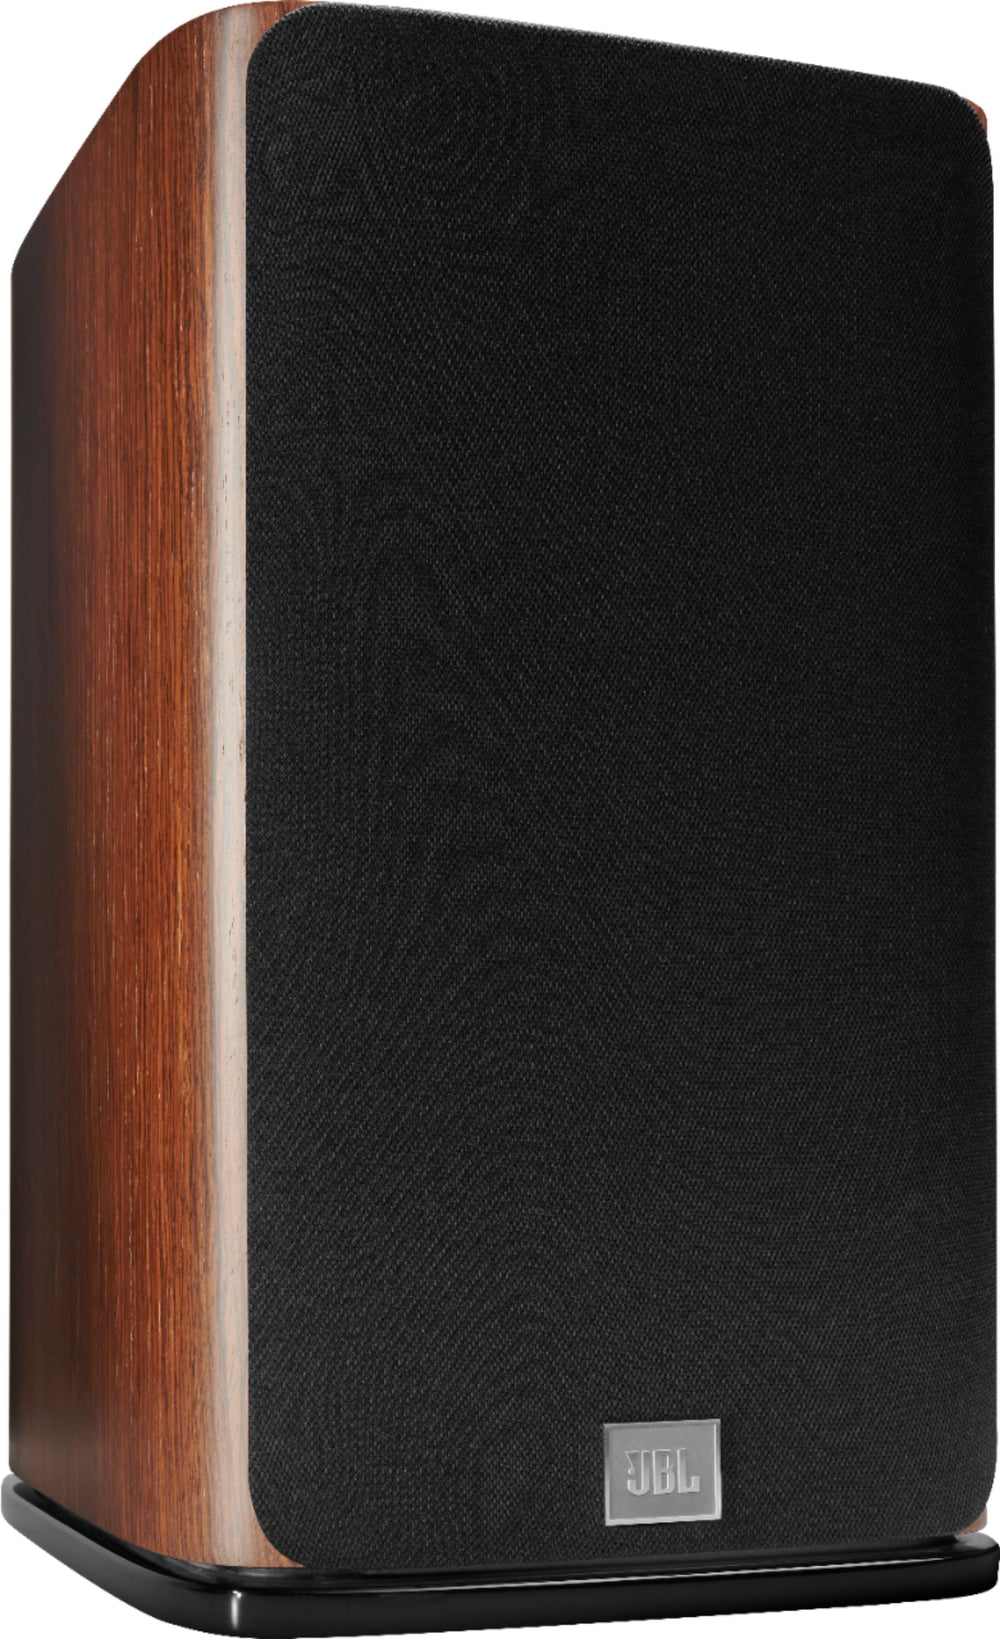 JBL - HDI1600 6.5" 2-way bookshelf loudspeaker with 1" compression tweeter, each - Walnut Wood Finish_1